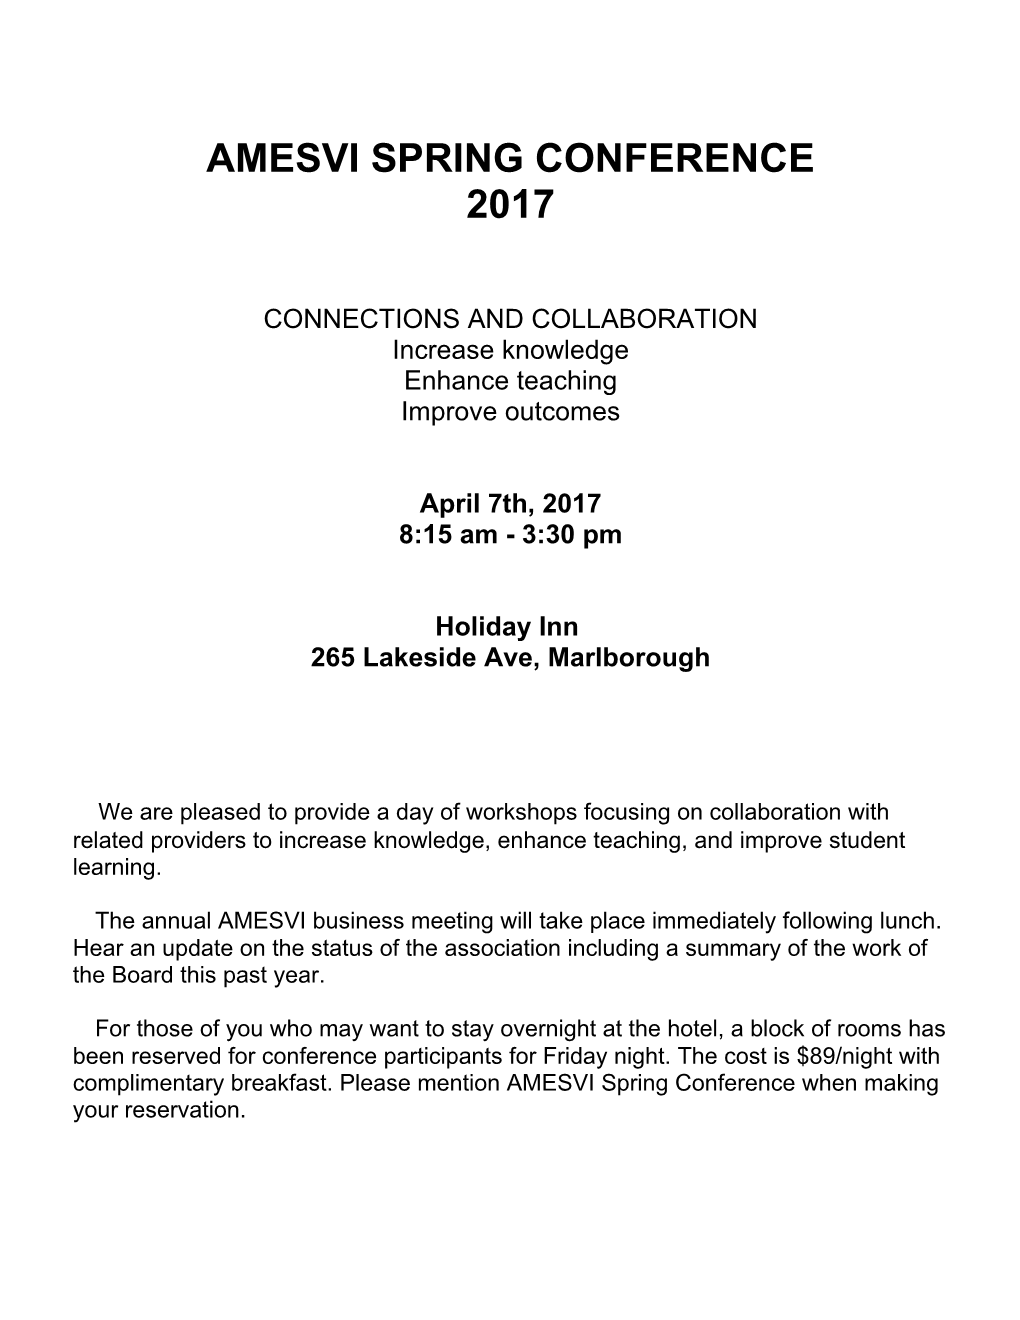 Amesvi Spring Conference